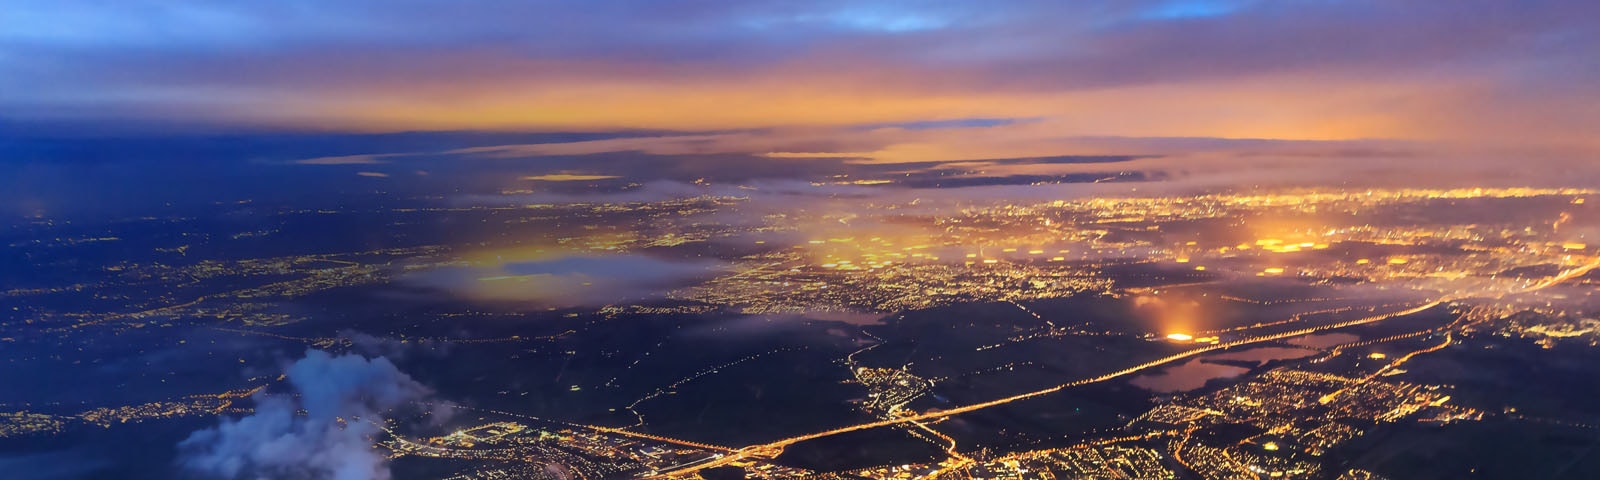 Les tendances en matière de technologies de réseau – Vue aérienne d'une ville la nuit